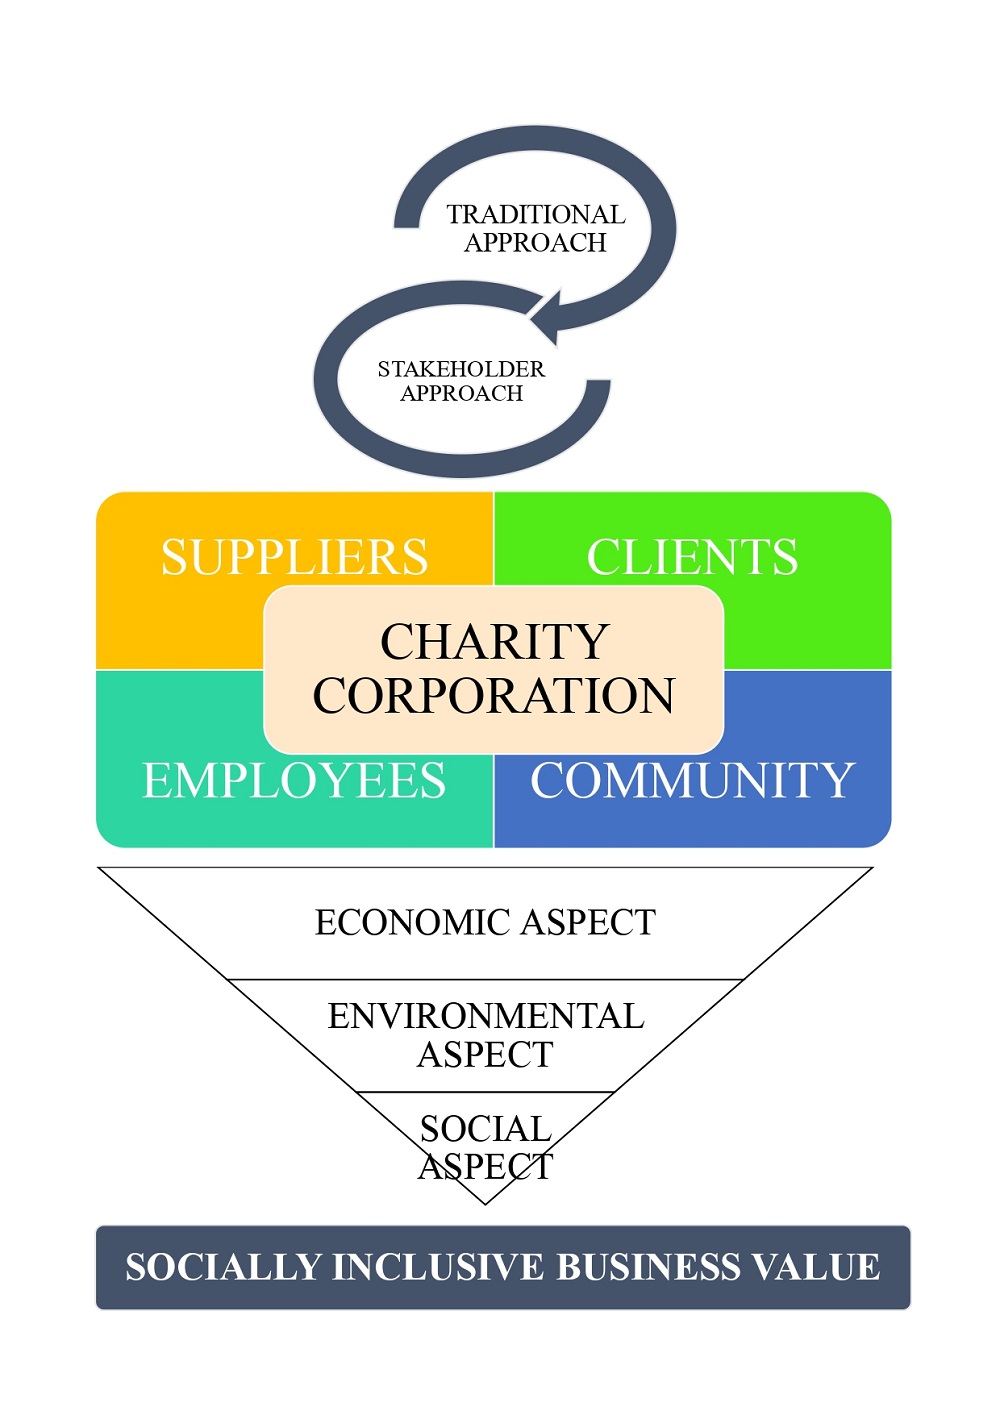 Розробка соціально-орієнтованої інклюзивної бізнес-моделі стратегічного оновлення підприємства